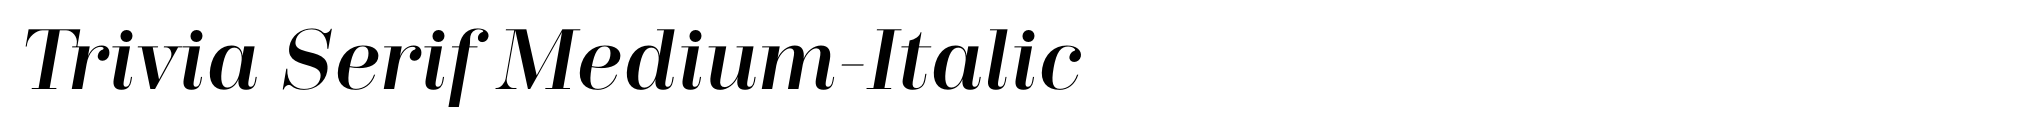 Trivia Serif Medium-Italic image